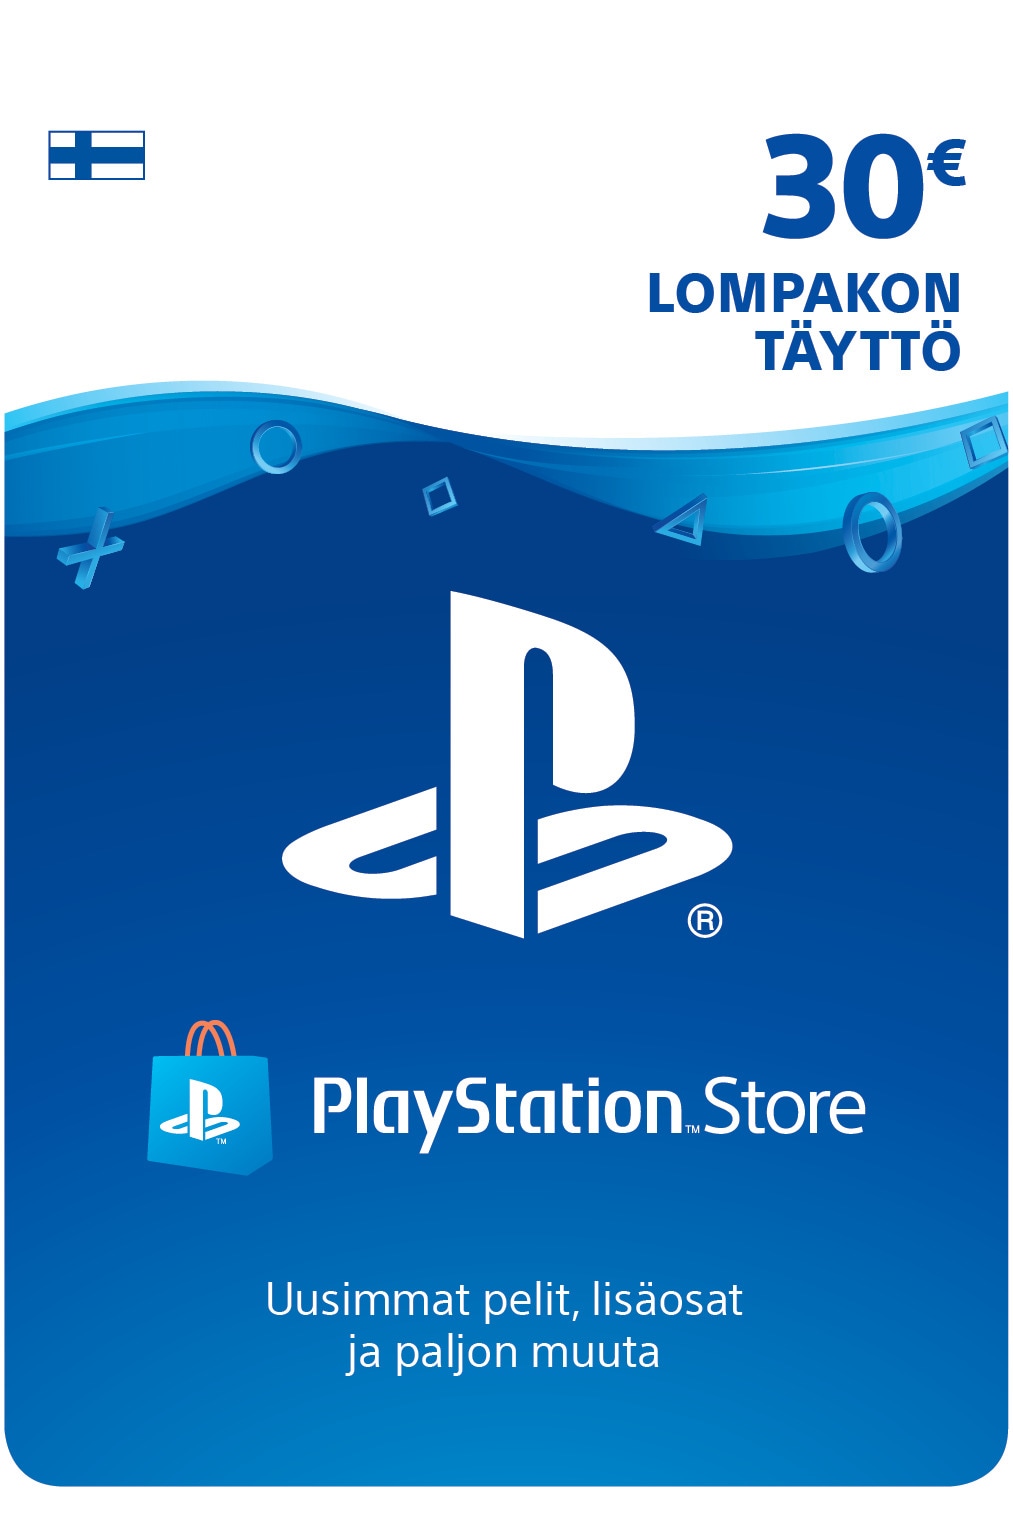 PlayStation Store PSN lompakon täyttö 30 EUR - Gigantti verkkokauppa